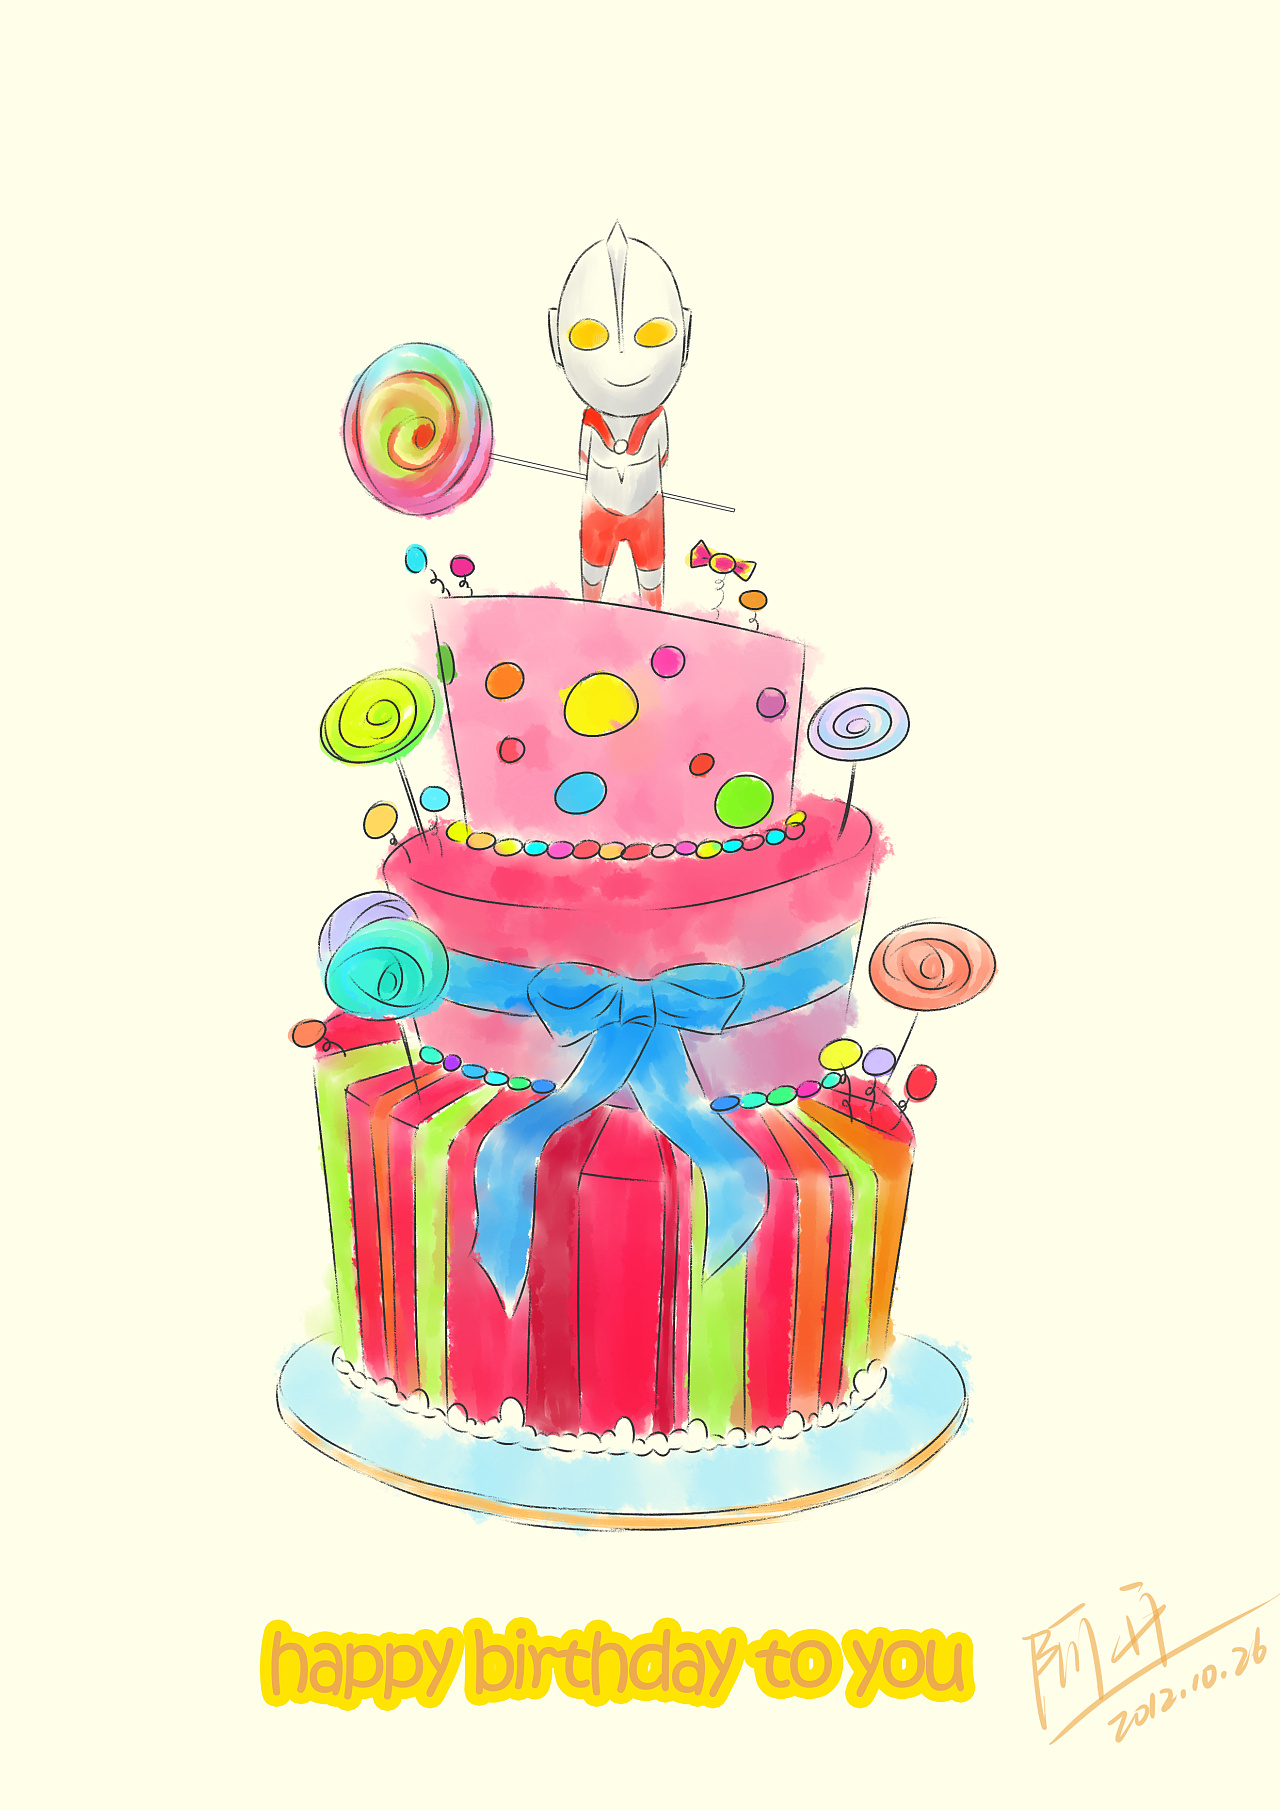 蛋糕生日圖 – 蛋糕做法 – Rry336